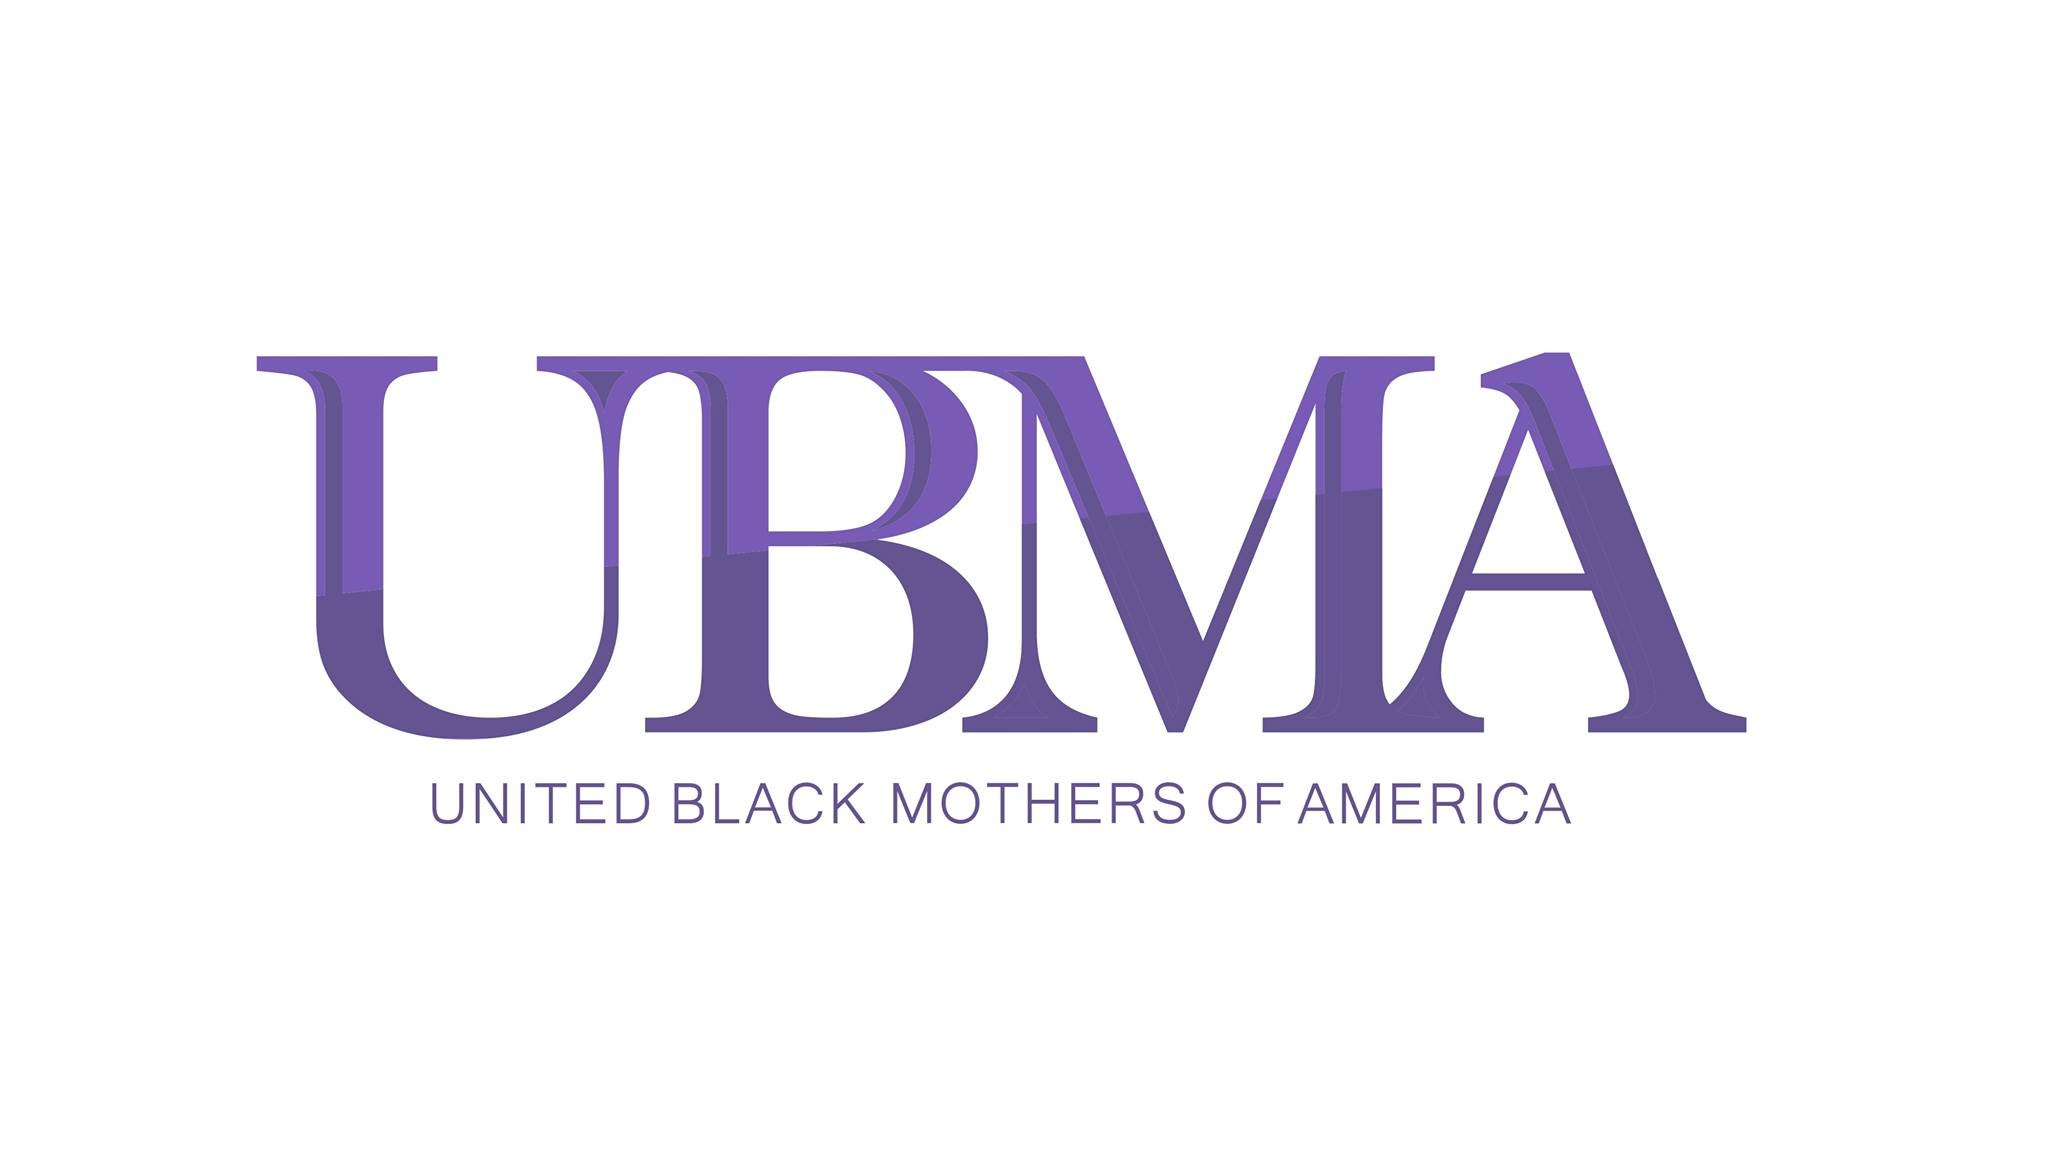 UBMA logo.jpg